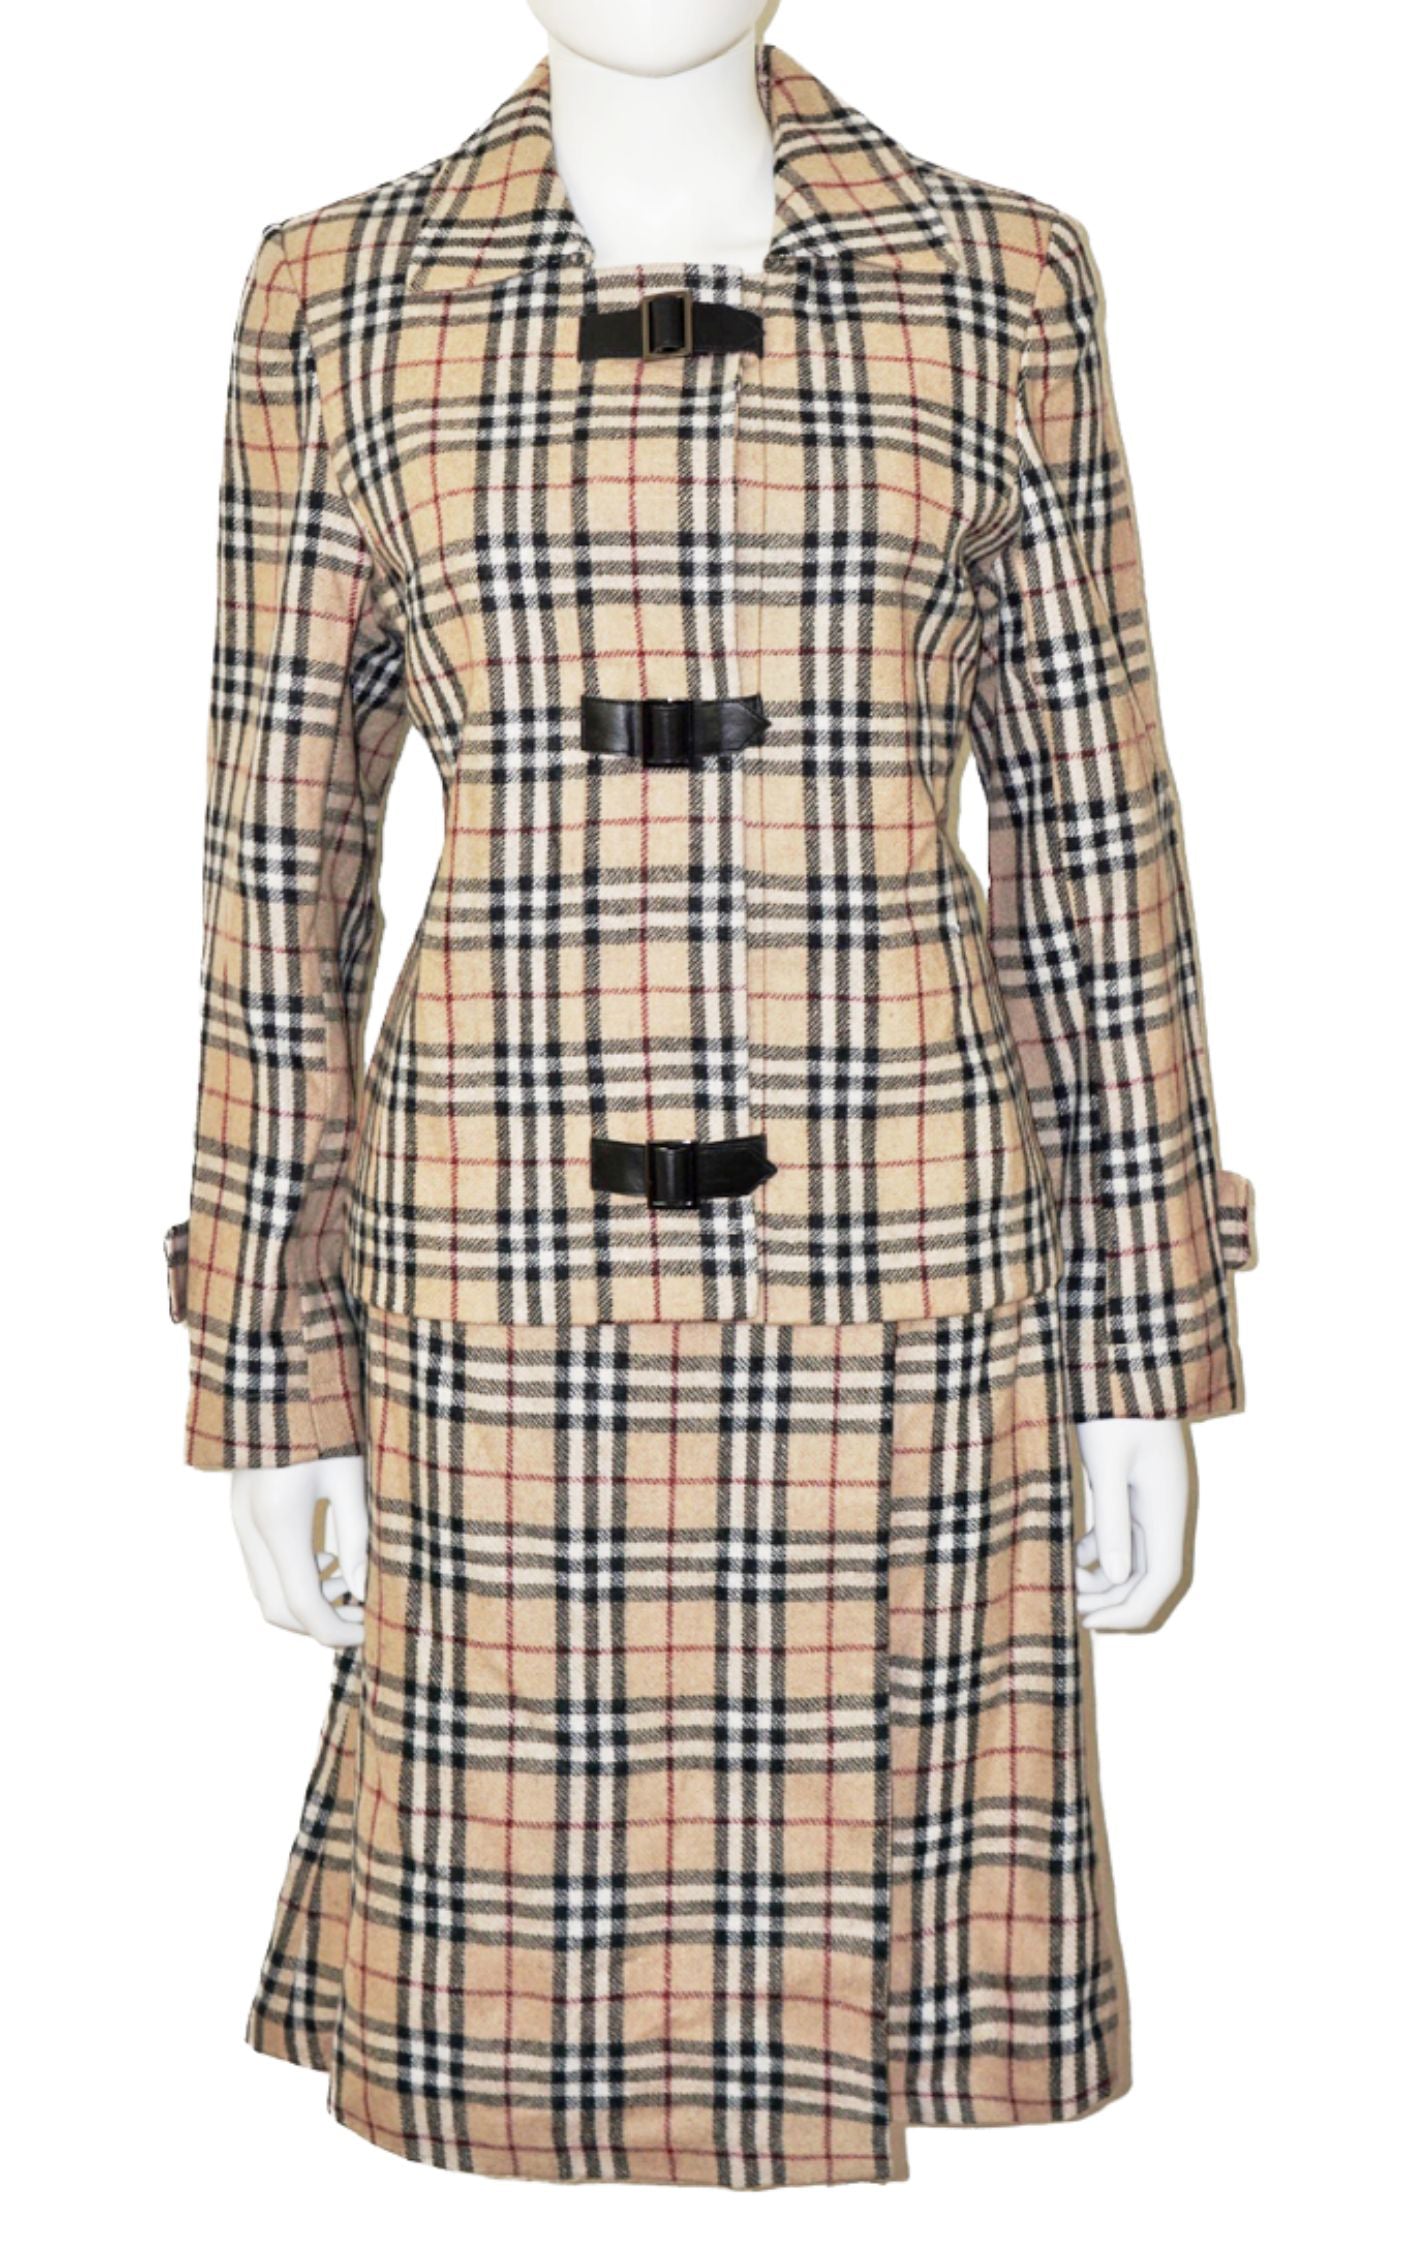 BLUEBURRY Tartan Checkered Wool Blazer Skirt Set Suit resellum